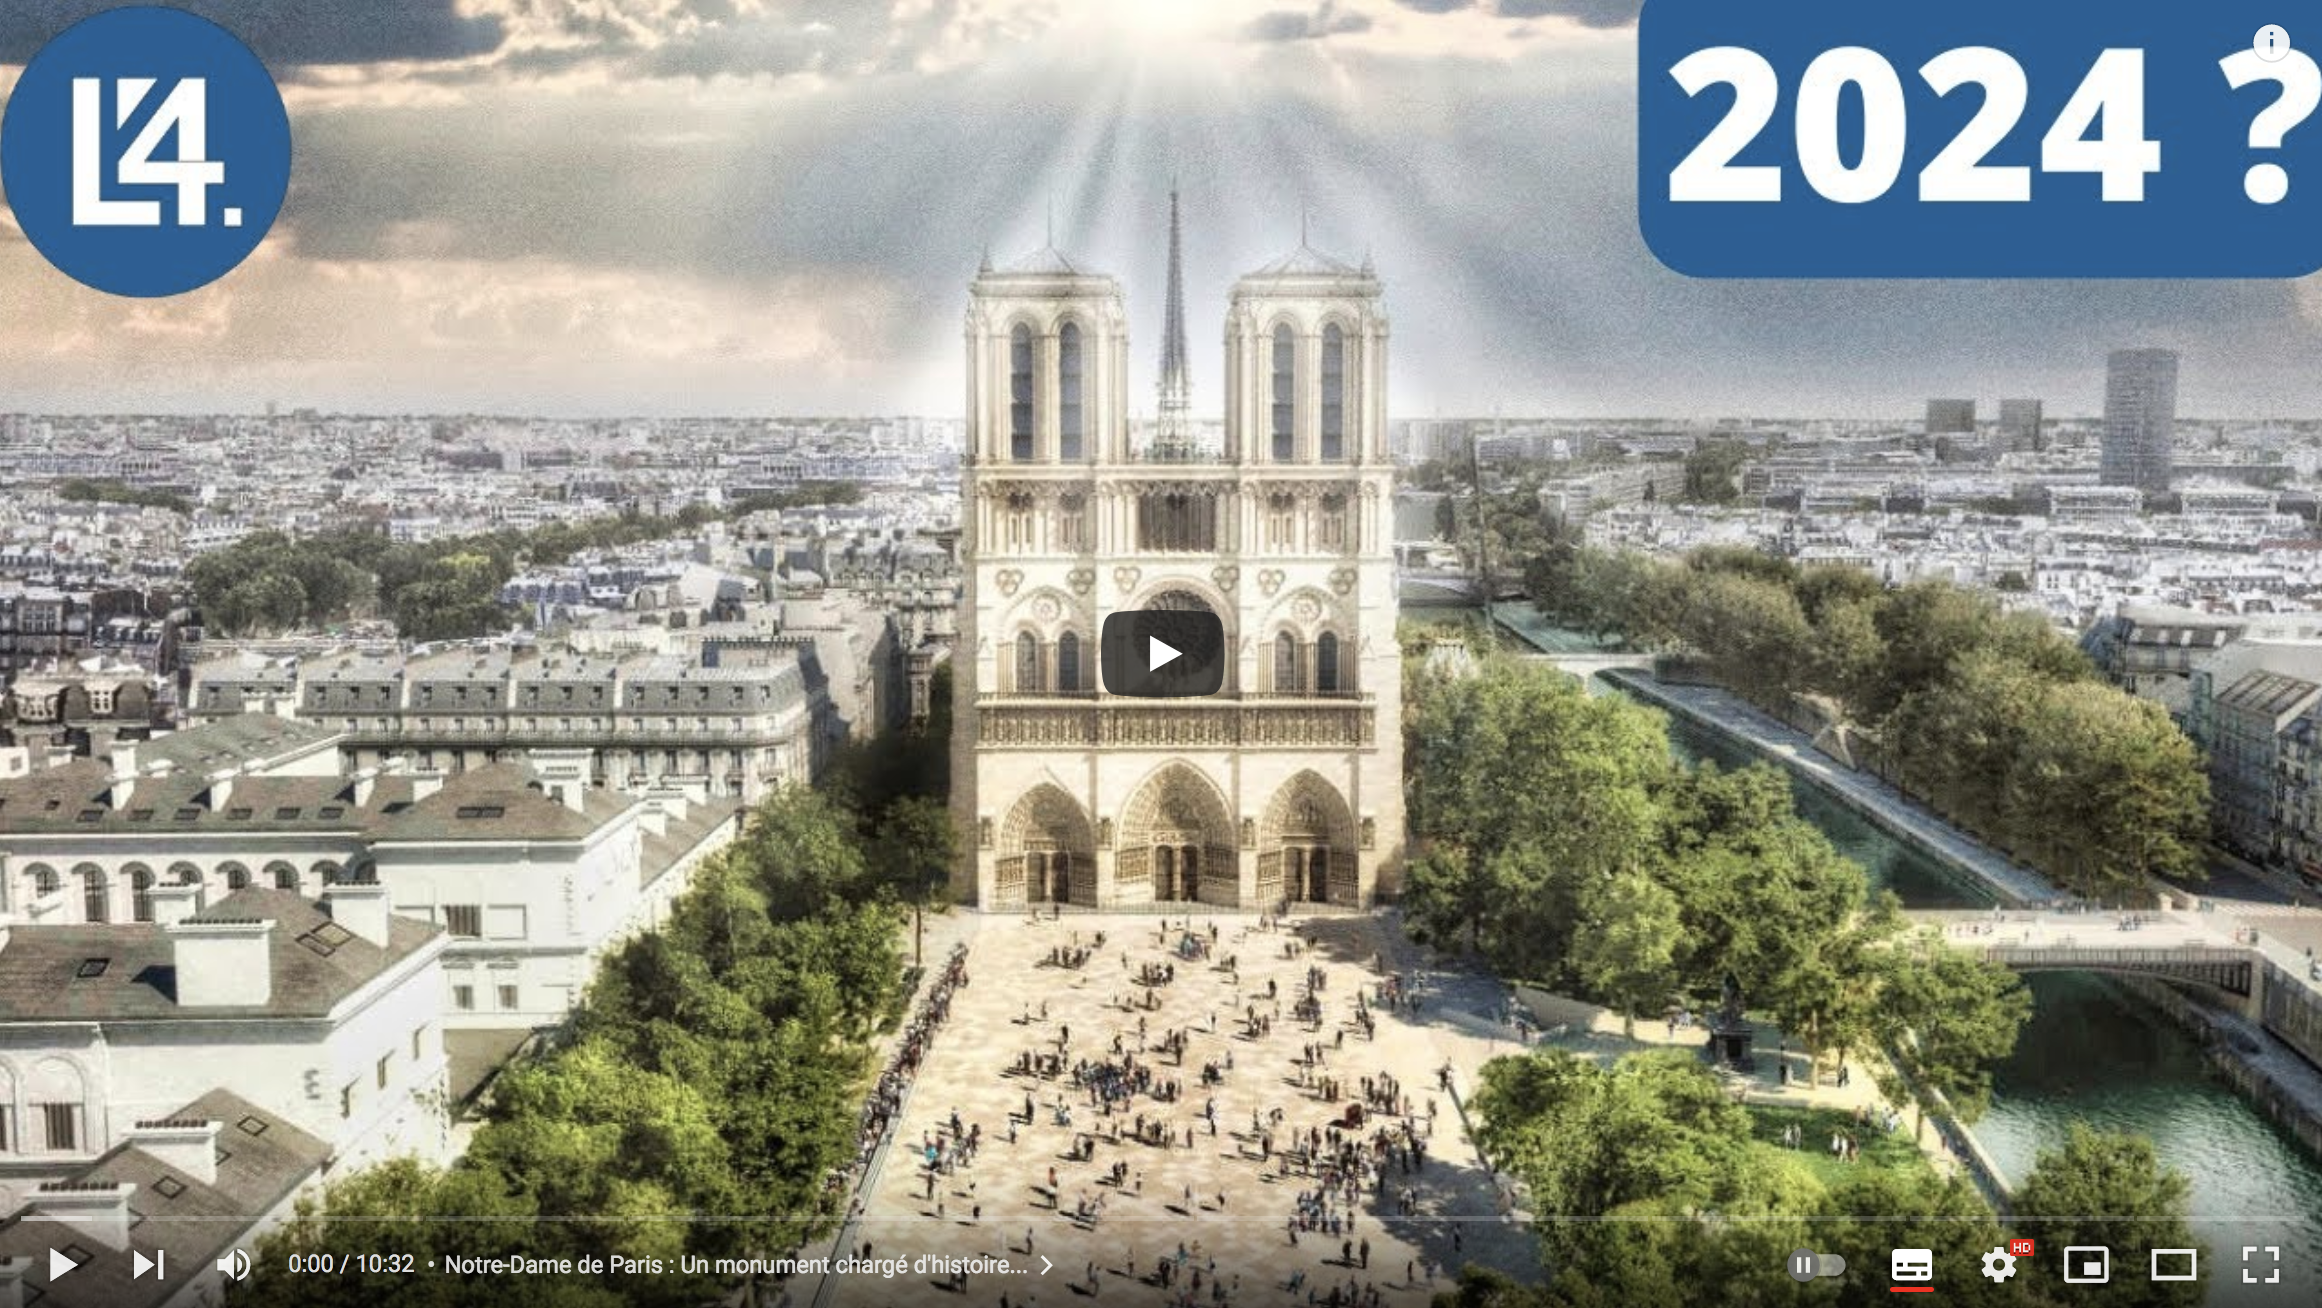 Notre-Dame de Paris : Après l’incendie, où en sont les travaux ?